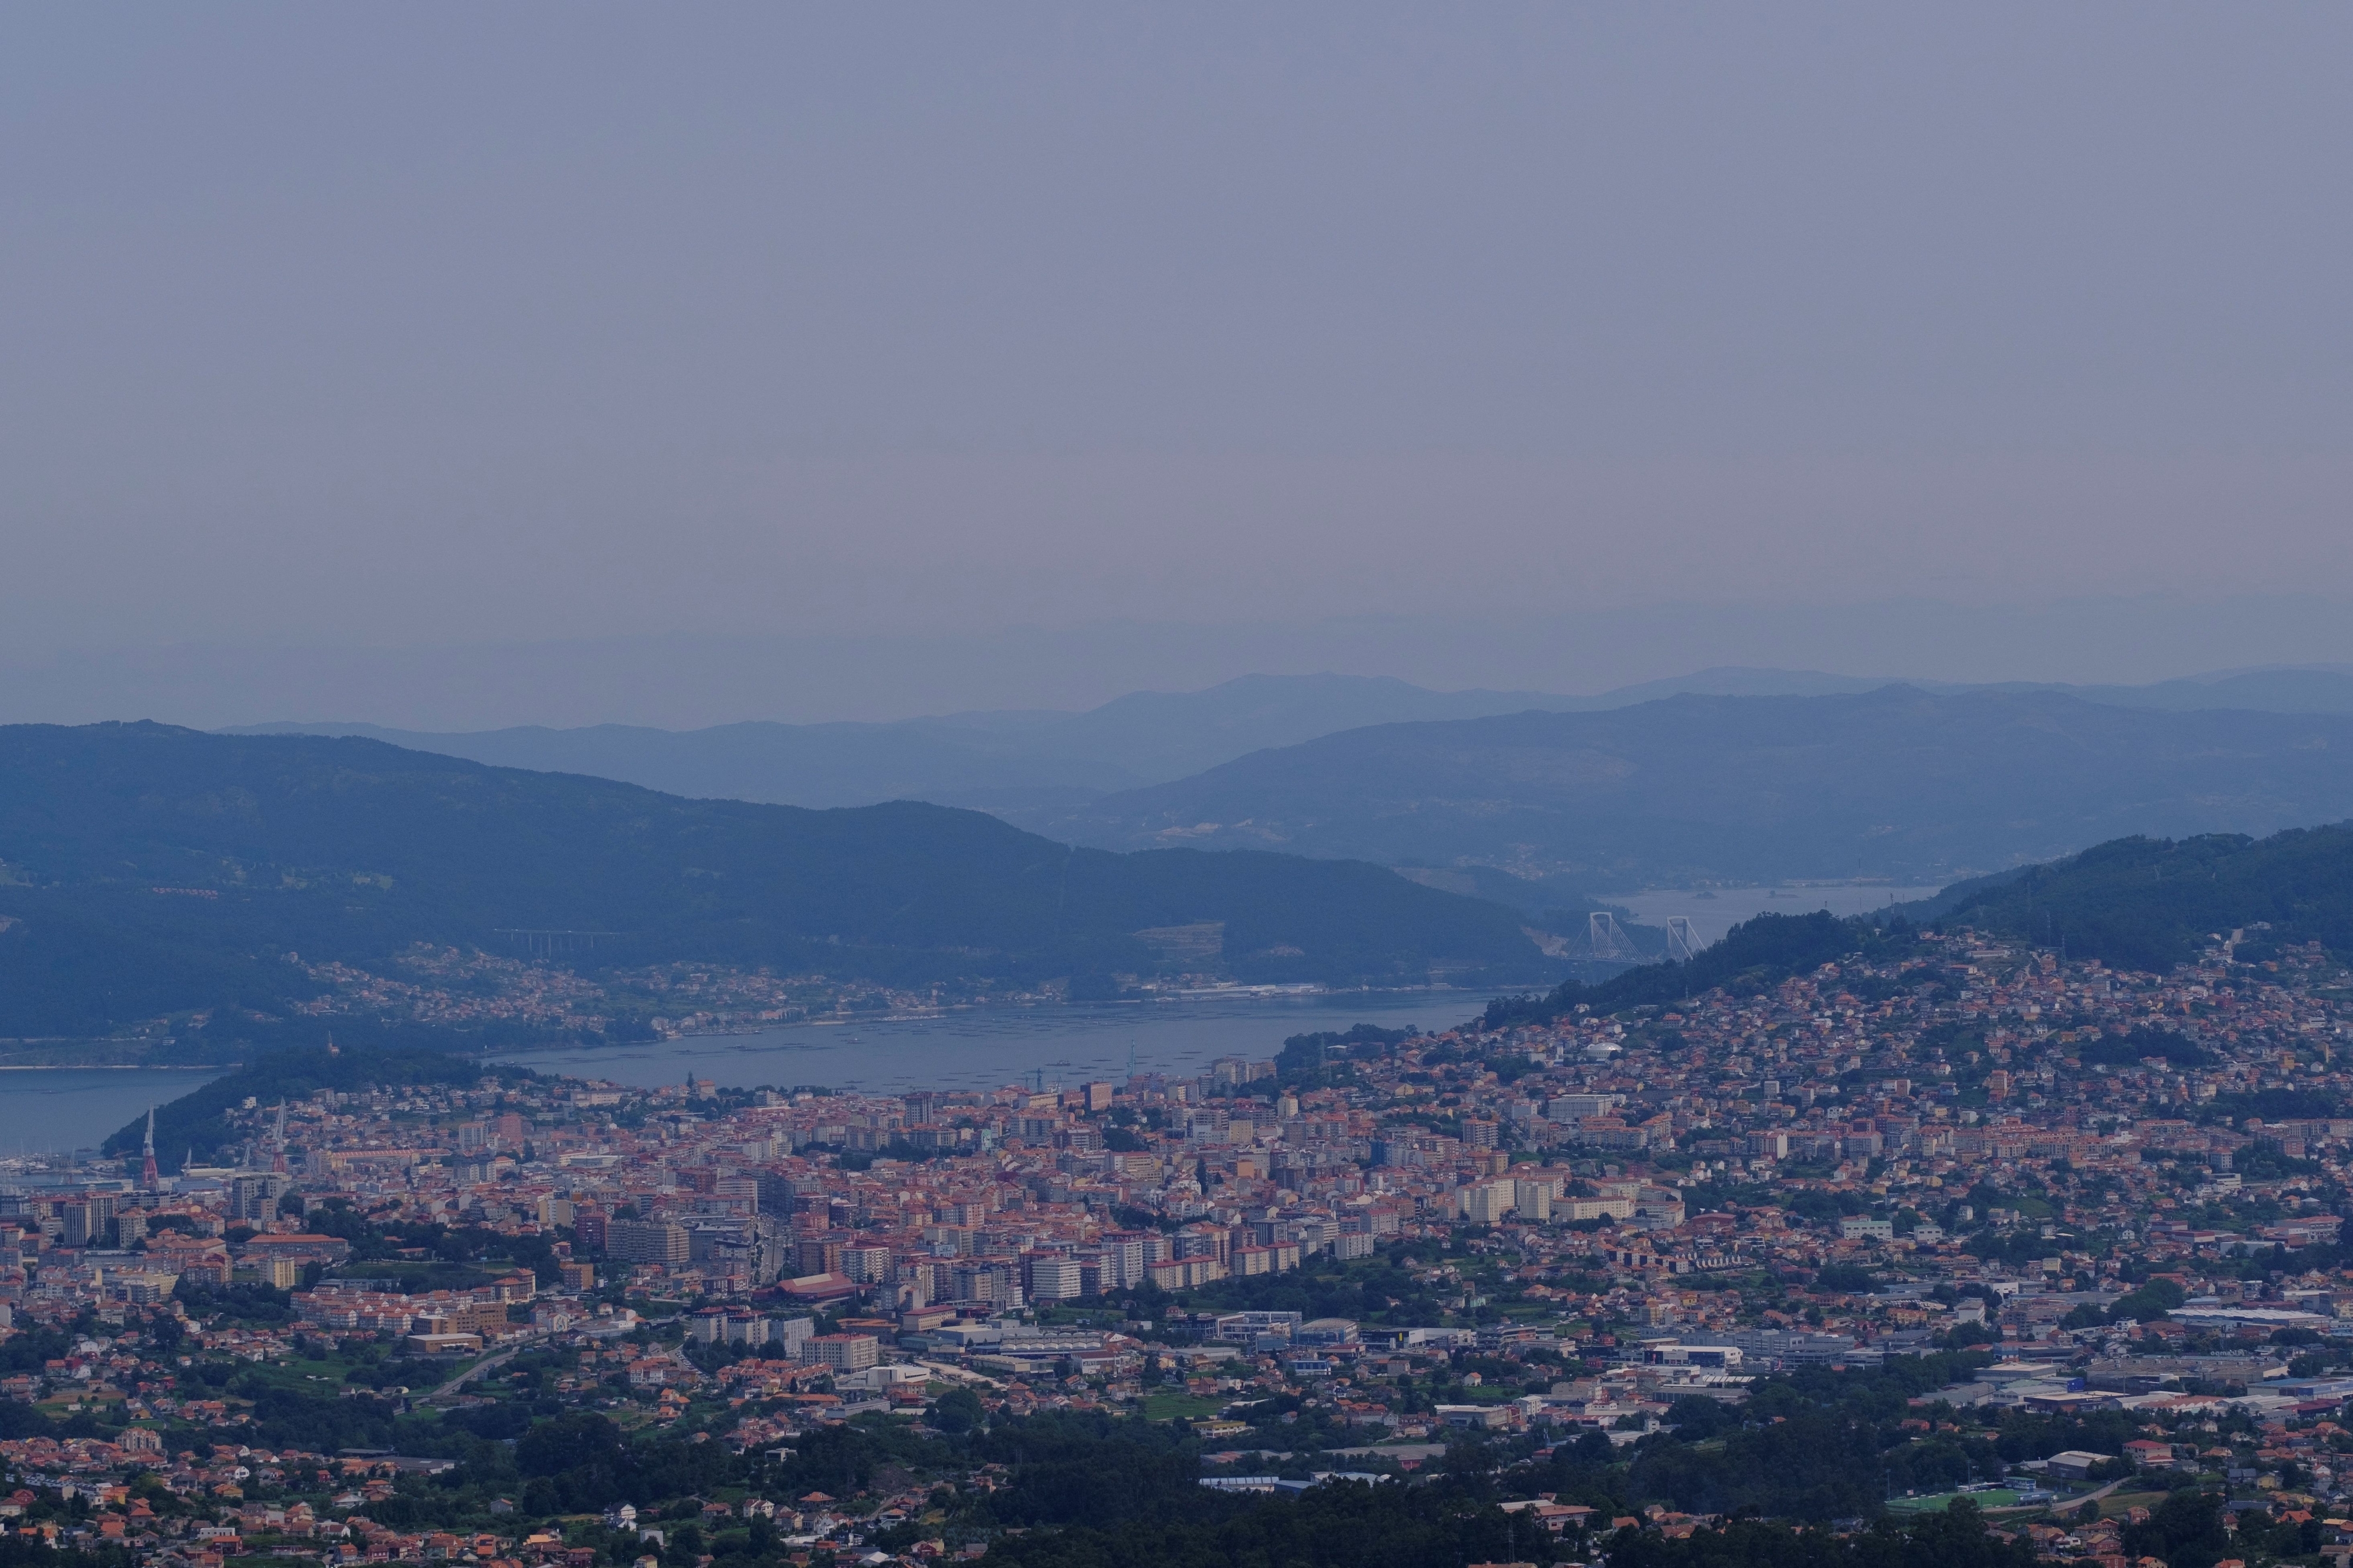 A wide-shot of the city of Vigo